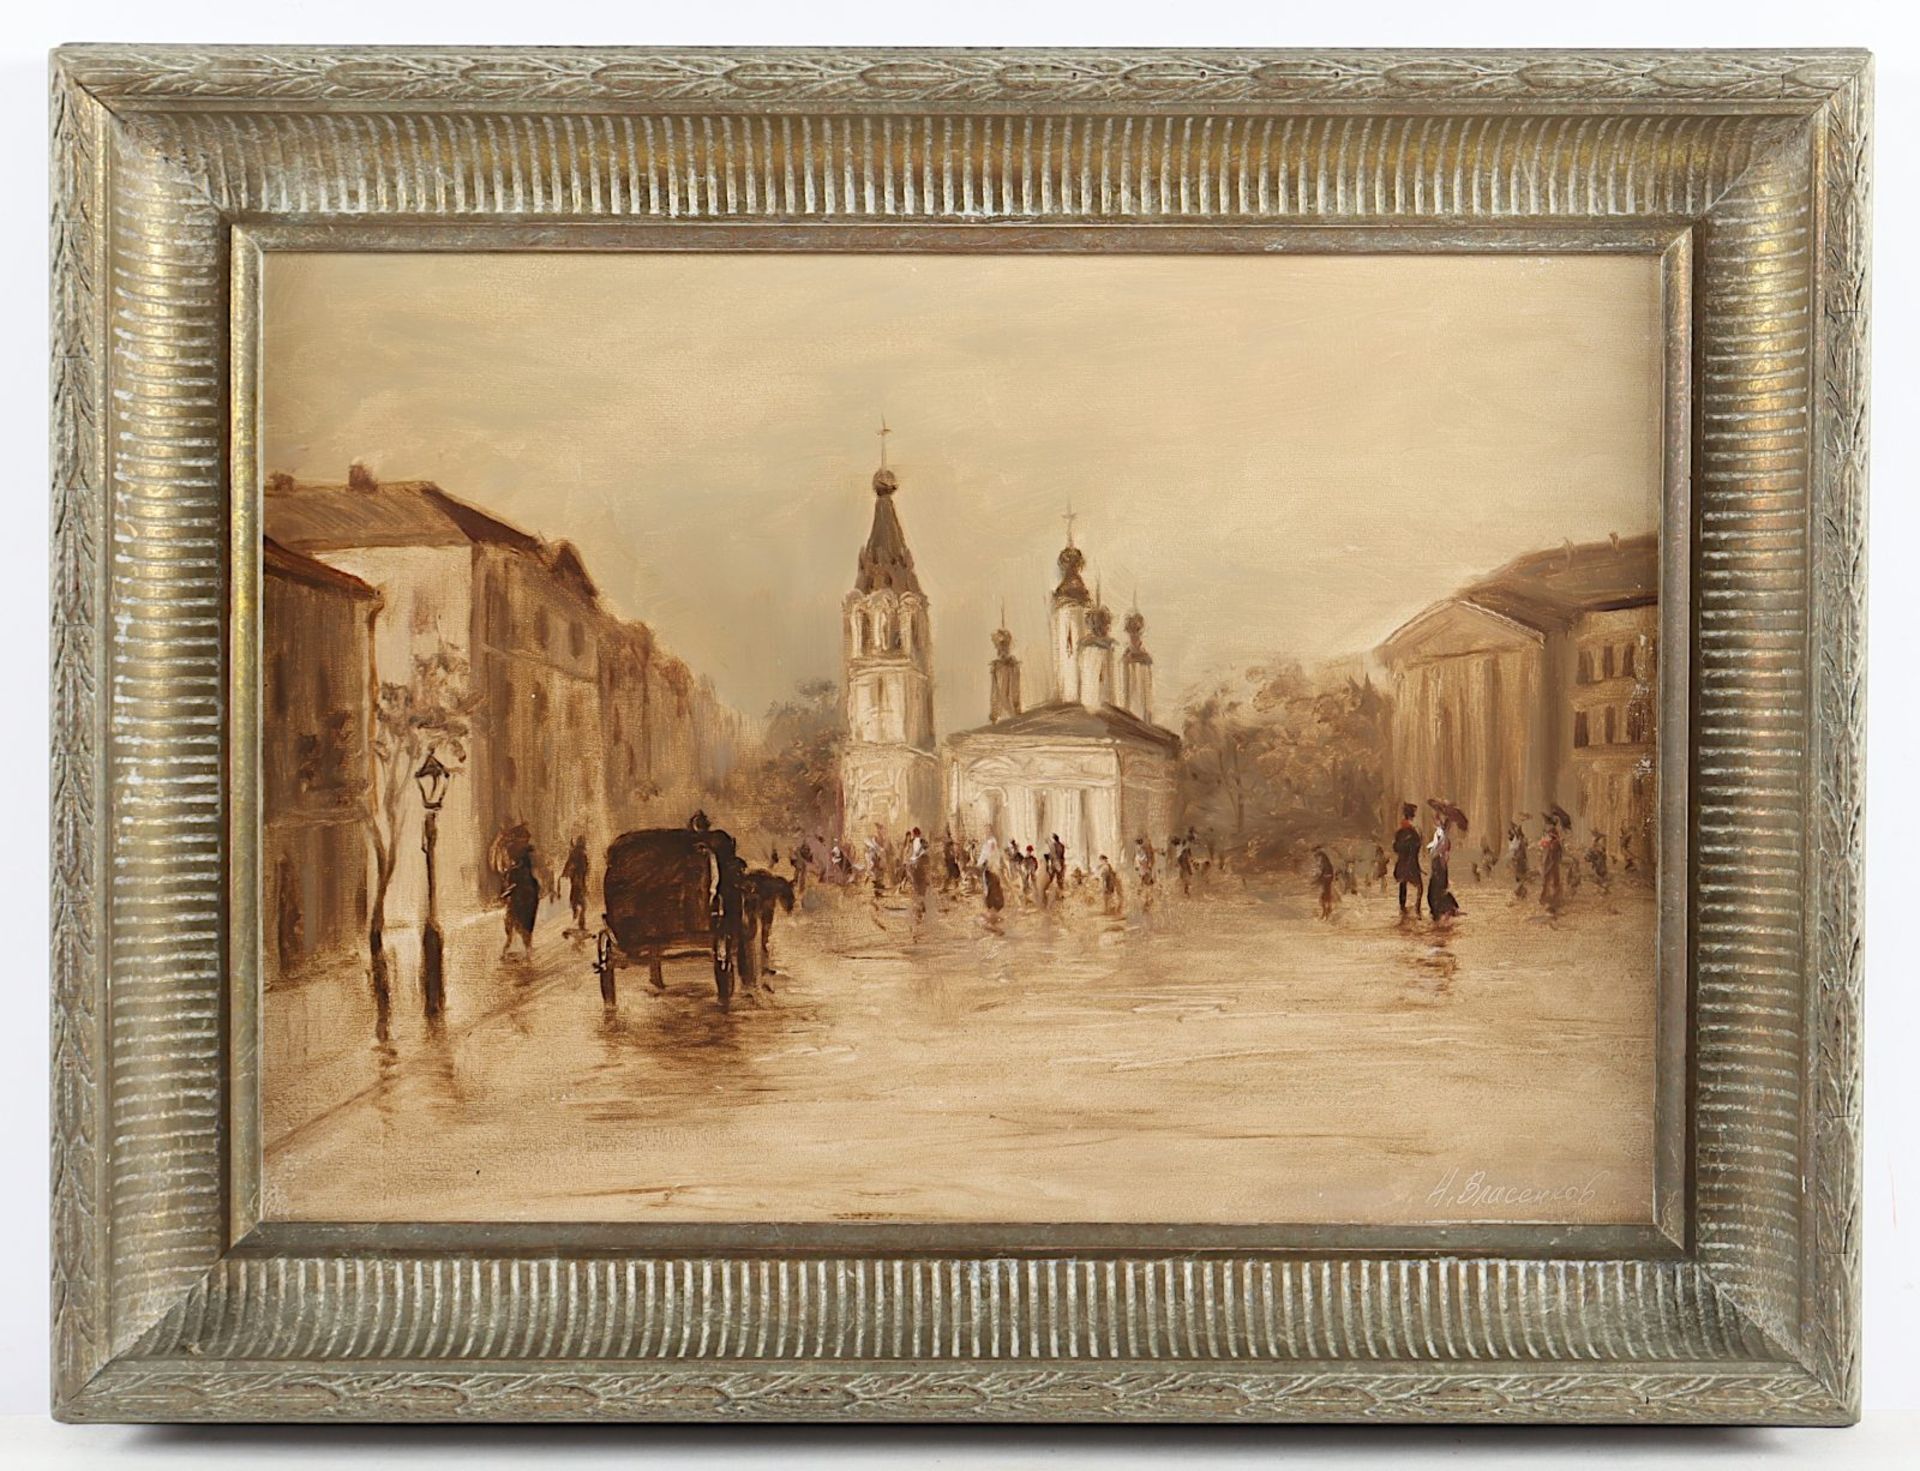 WRASENKOF, N. (Russischer Maler des 20.Jh.), "Platz in einer russischen Stadt", R.